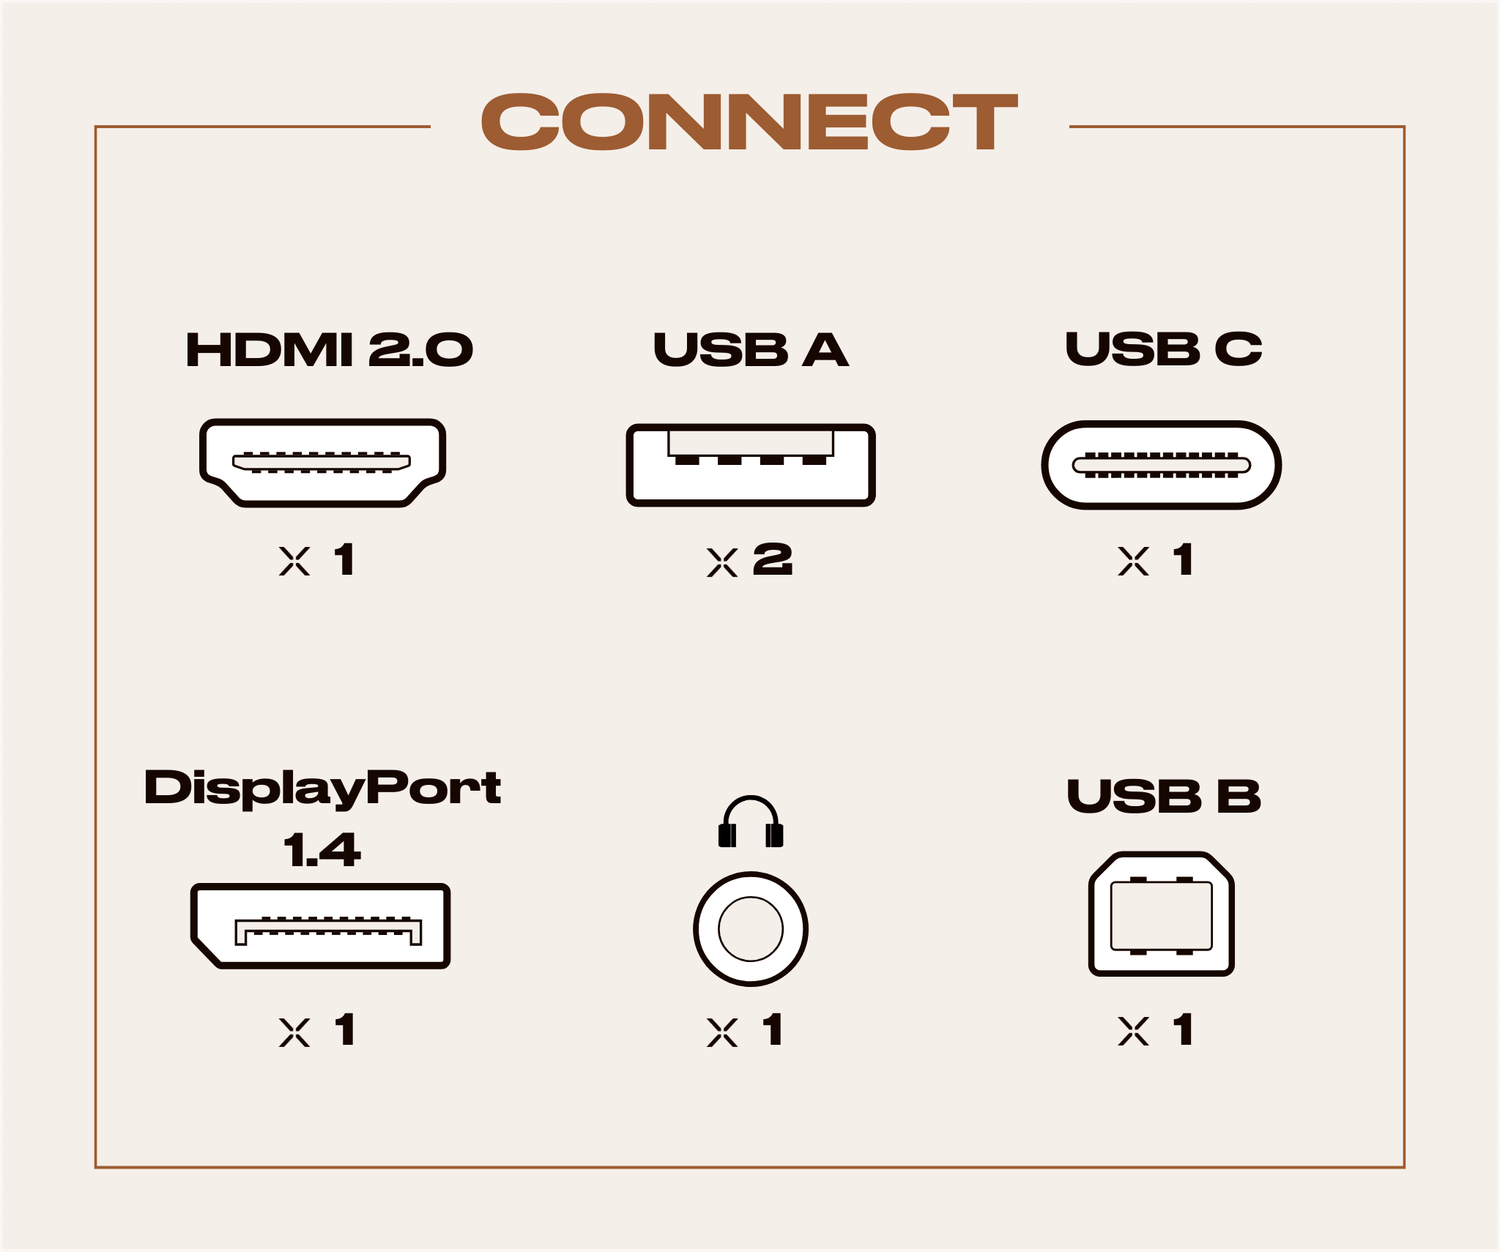 Écran PC Bureautique | 28&quot; | 4K UHD | USB-C (+ charge 65W)